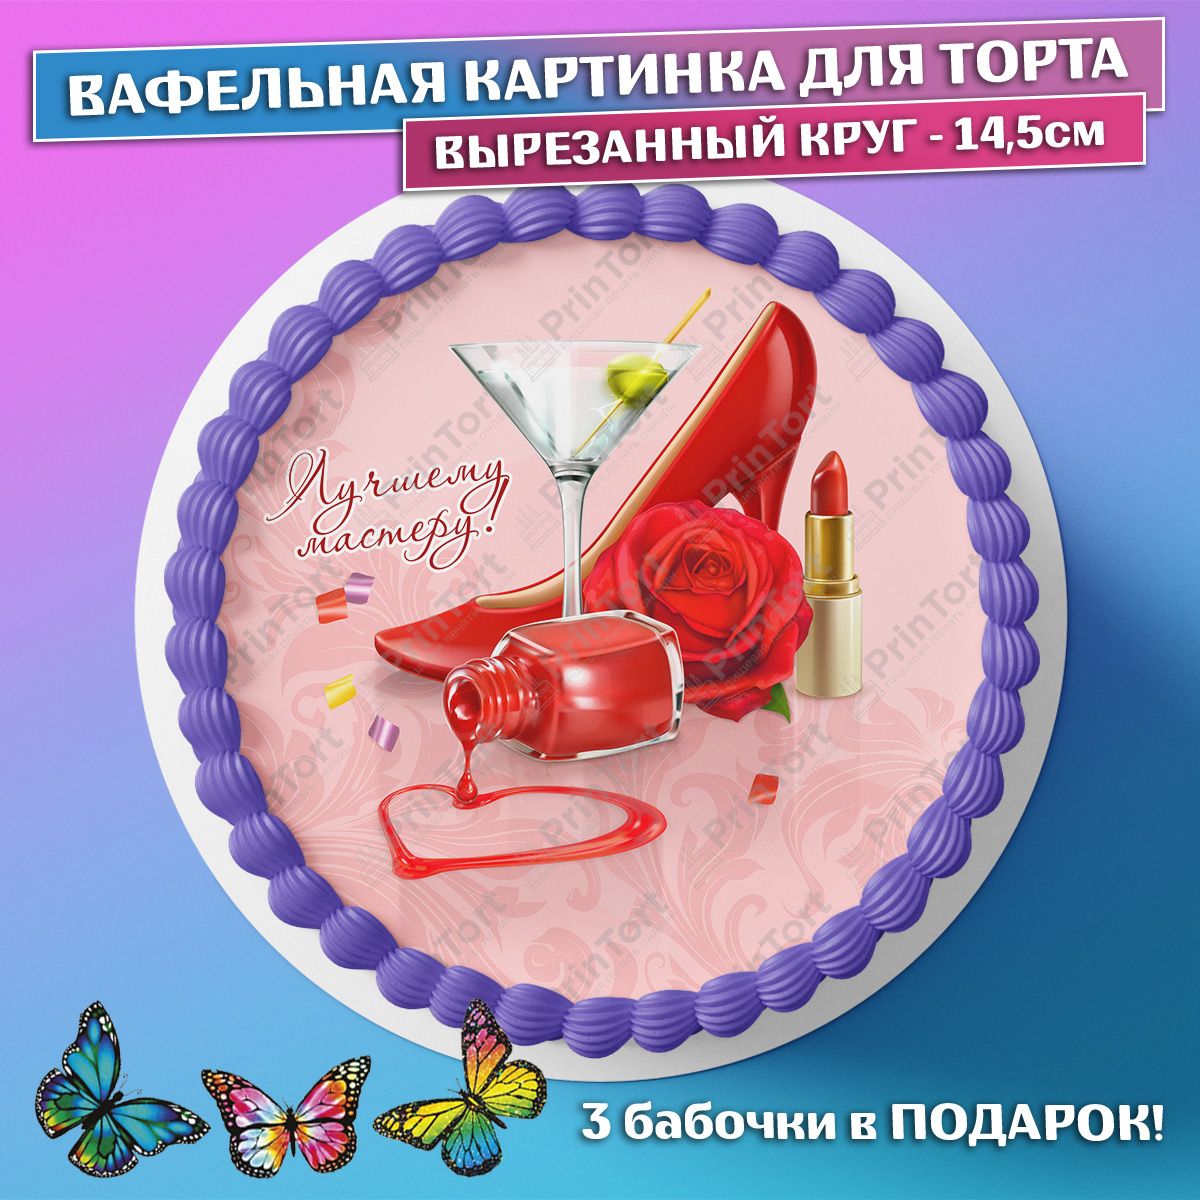 вафельные картинки на торт с днем рождения